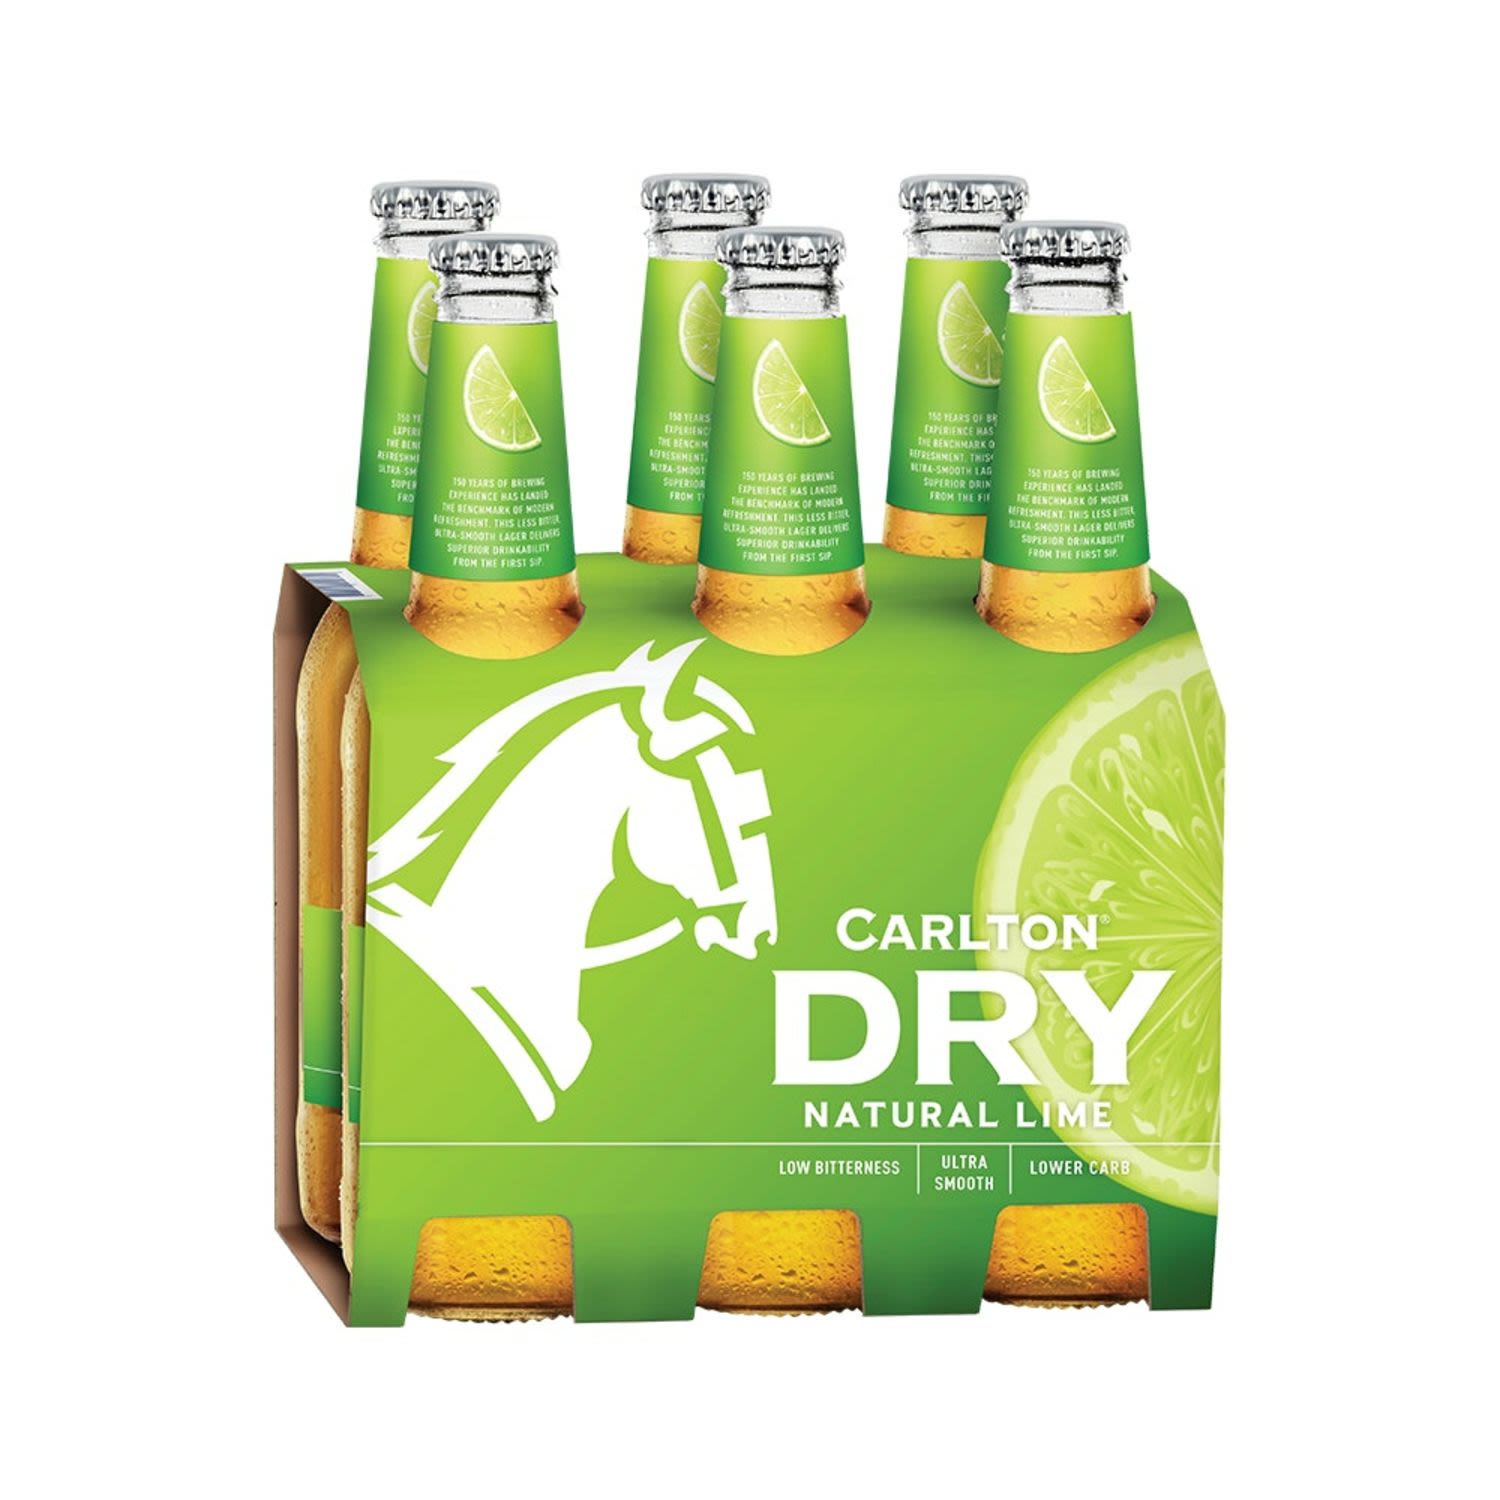 Carlton Dry Lime Peels Bottle 330mL 6 Pack